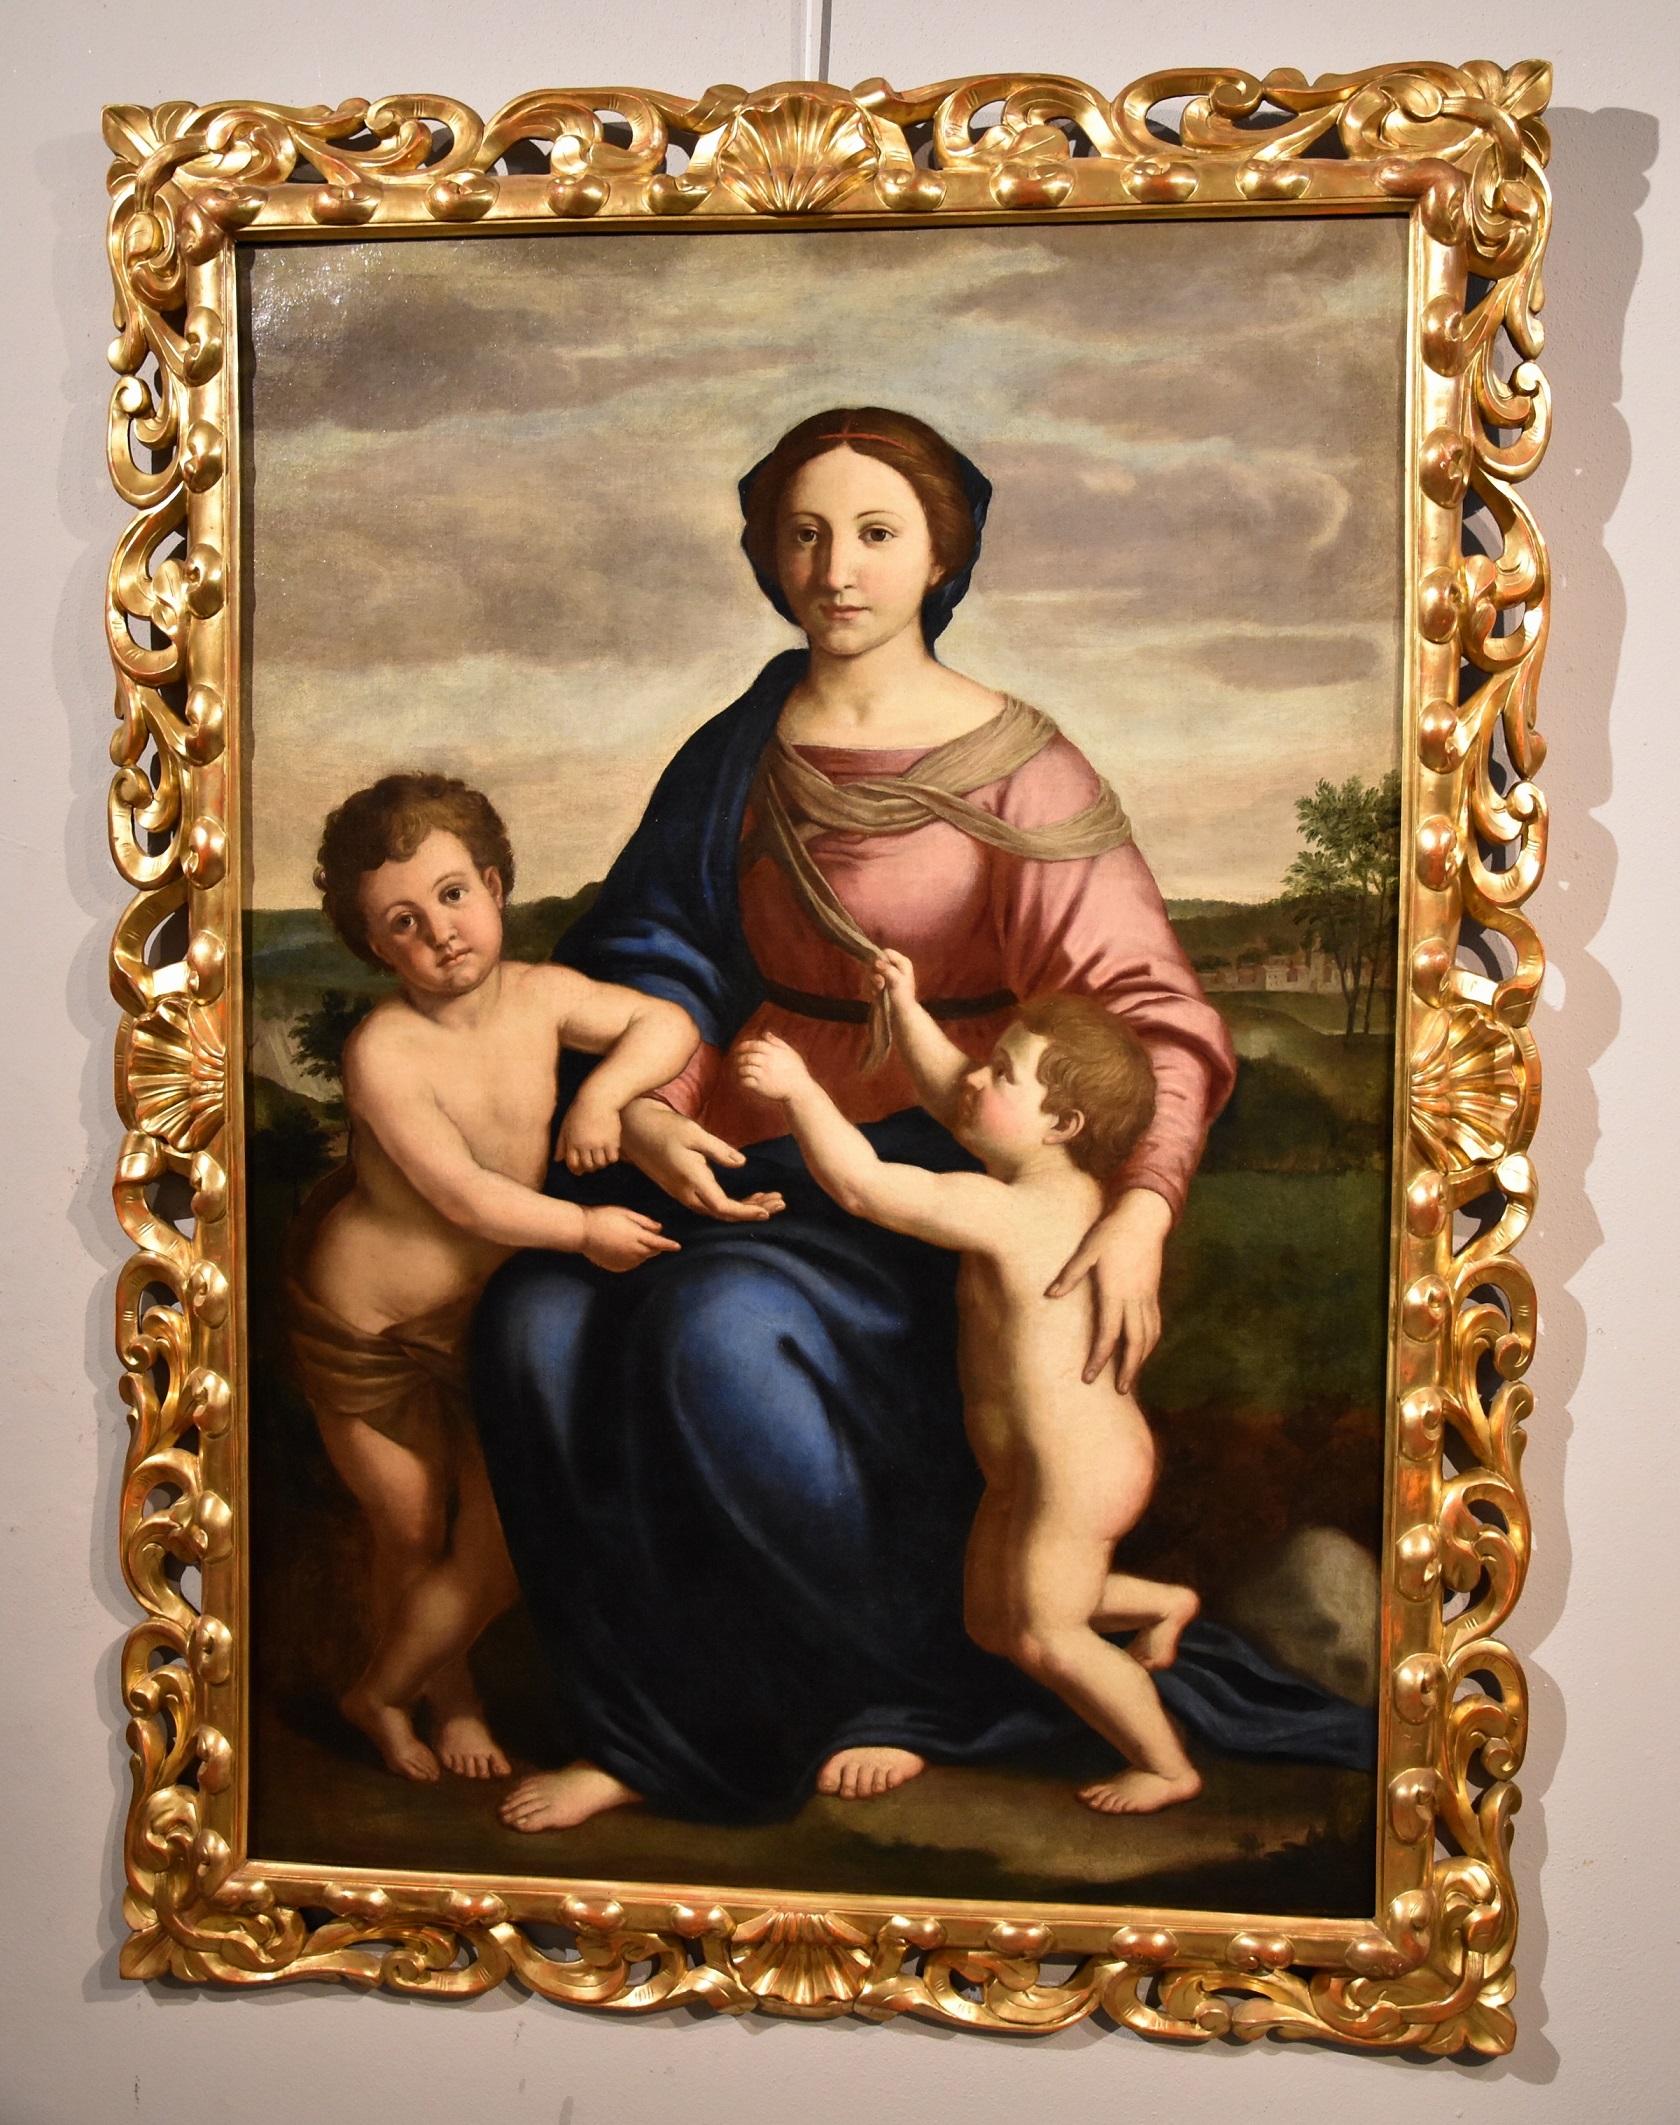 Salvi Virgin Madonna Paint Old master Oil on canvas 17th Century Raffaello Italy 7